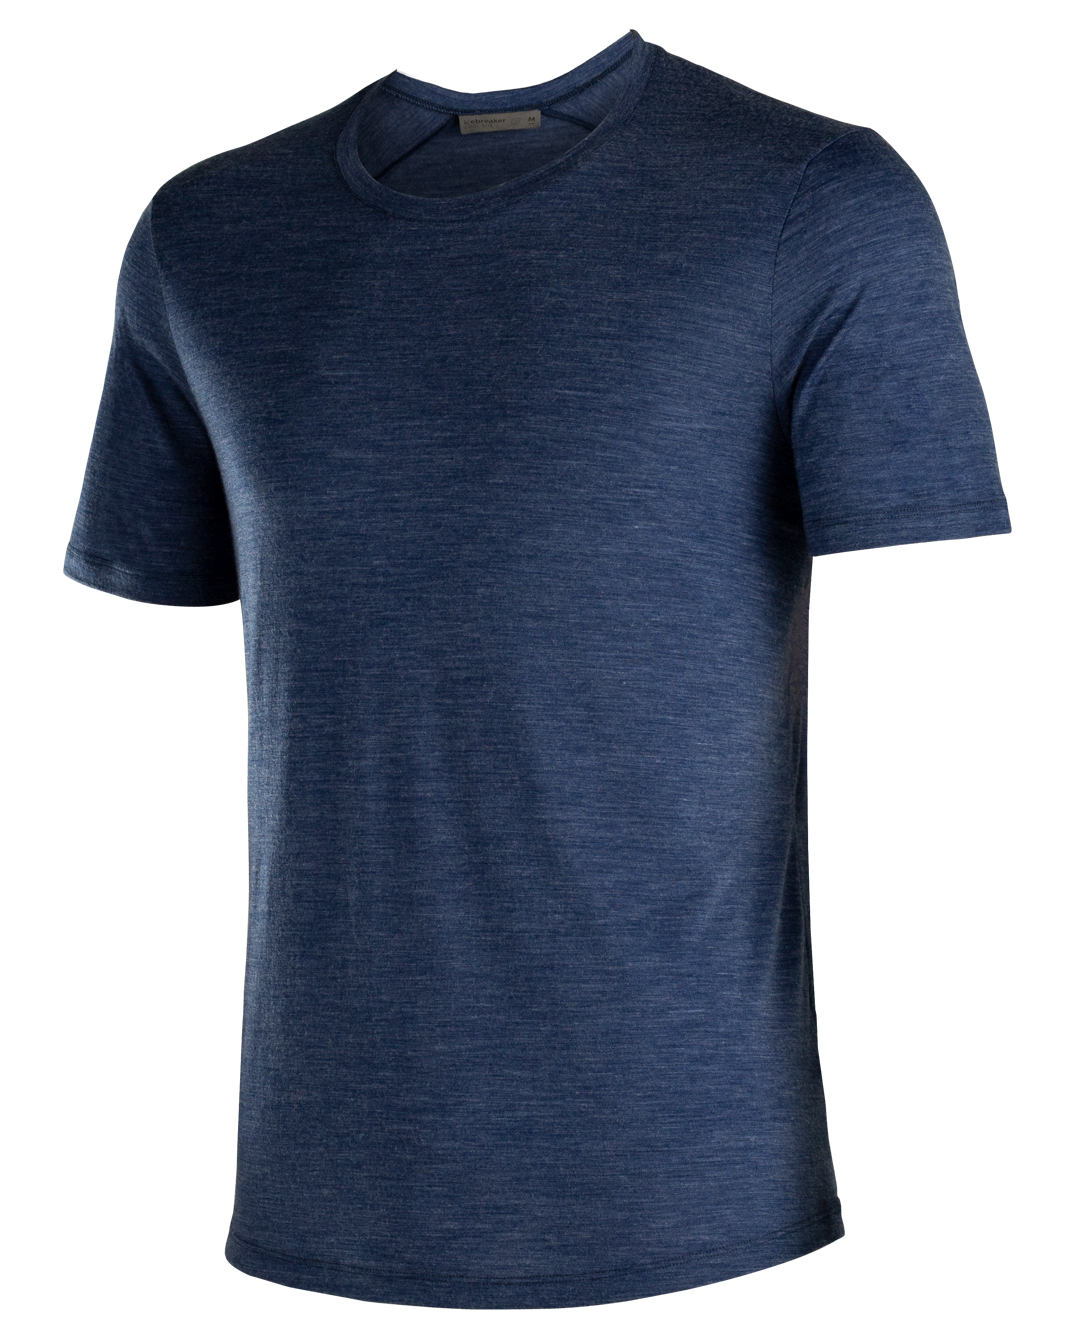 T-shirt ras du cou à manches courtes Sphere cool-lite™ en mérinos marine nocturne